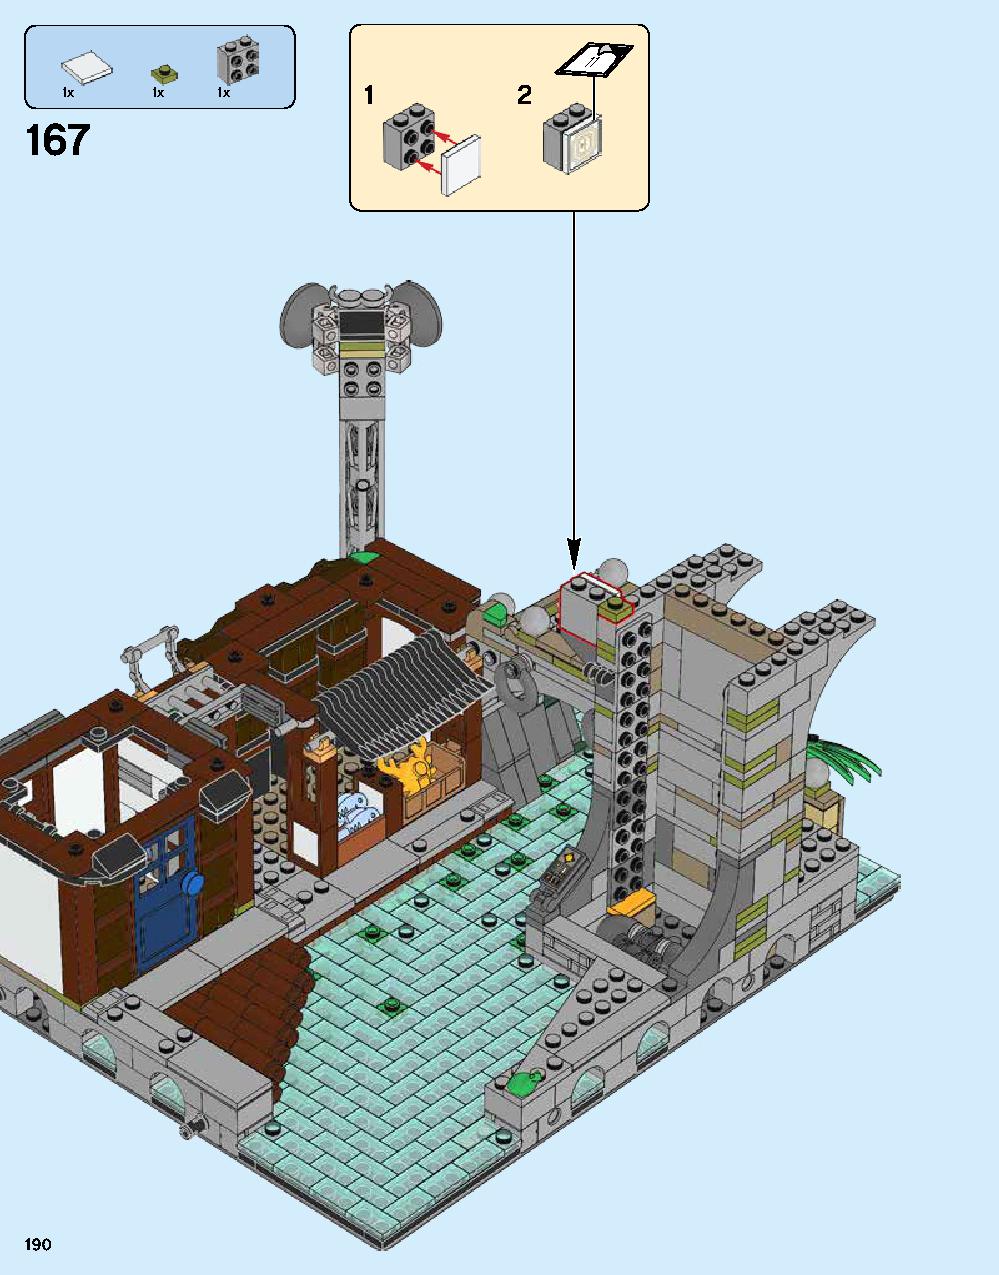 ニンジャゴー シティ 70620 レゴの商品情報 レゴの説明書・組立方法 190 page